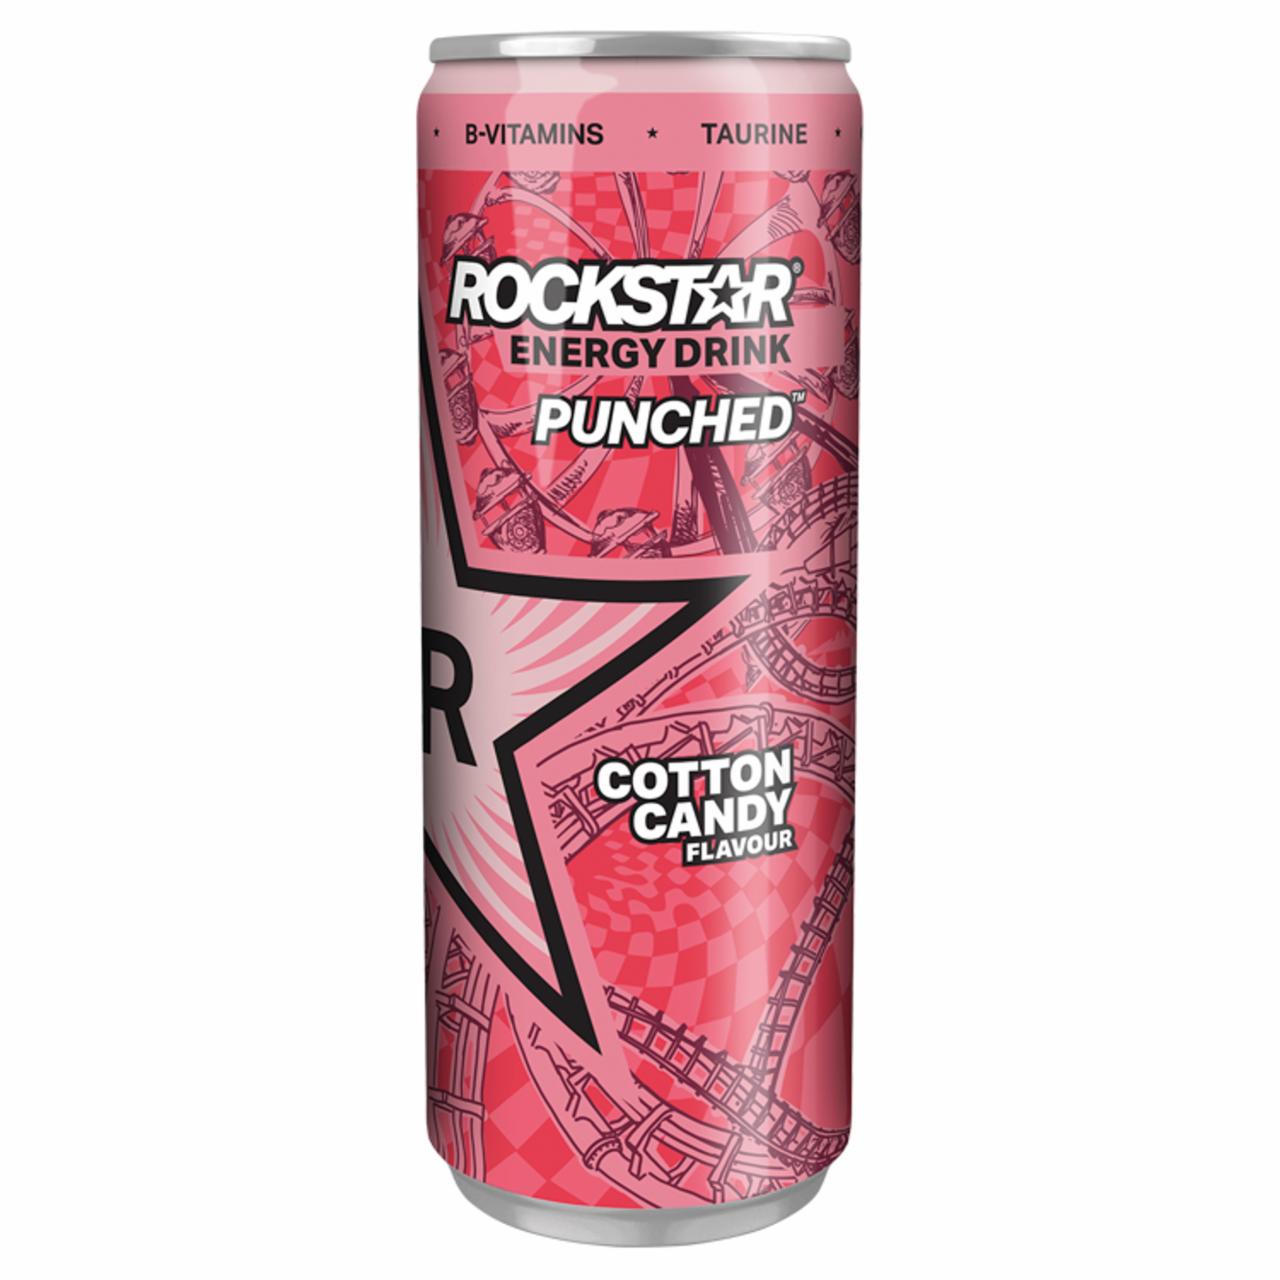 Zdjęcia - Rockstar Punched Cotton Candy Flavour Gazowany napój energetyzujący 250 ml